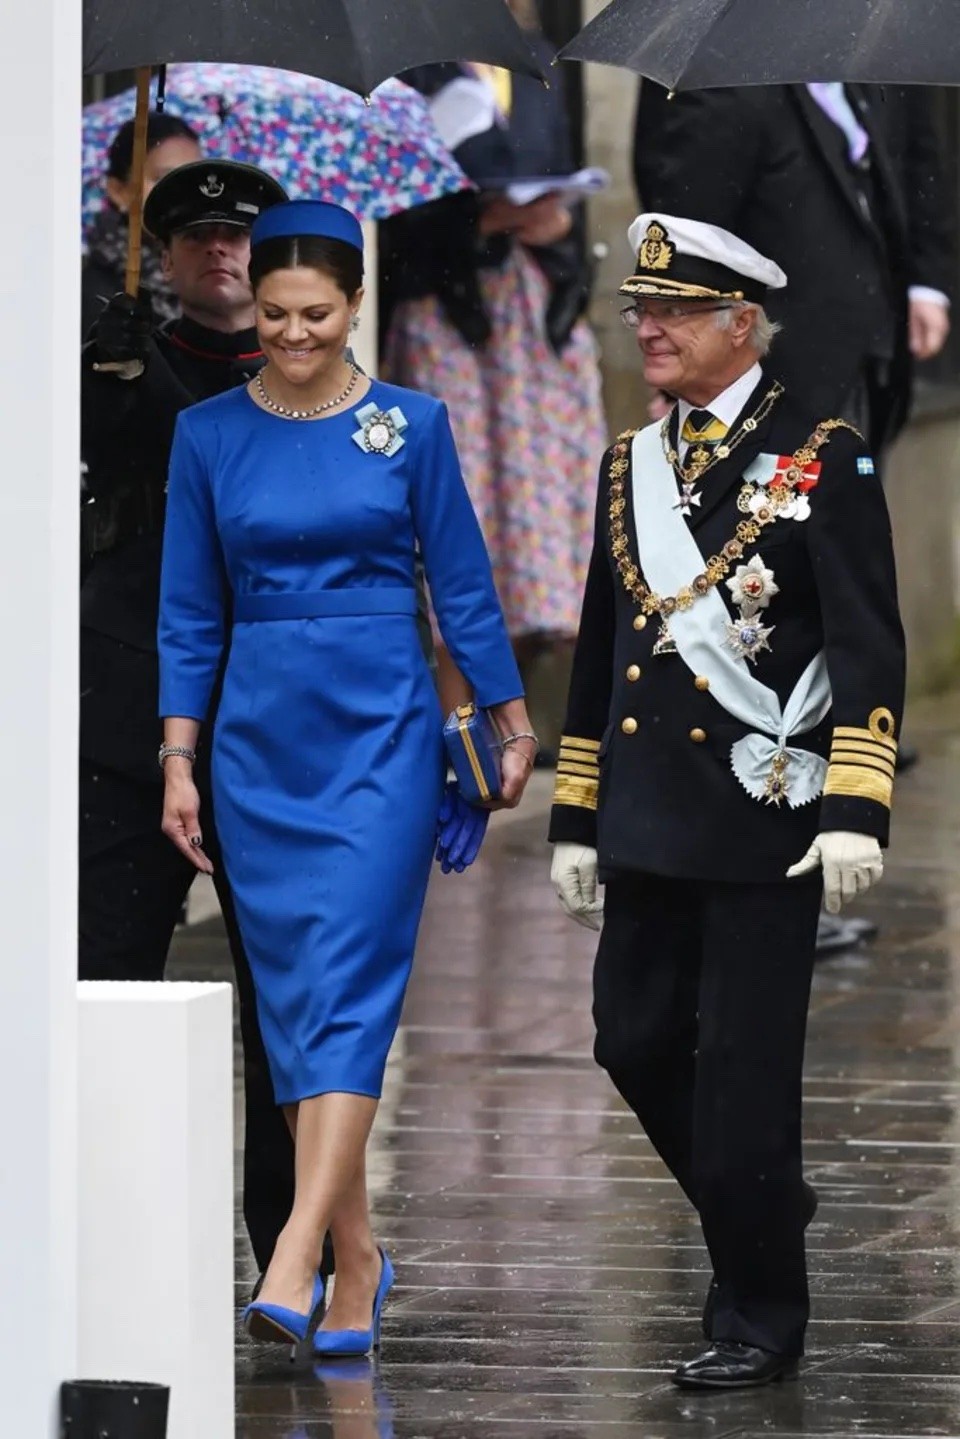 Hoàng gia và lãnh đạo các nước đến dự lễ đăng quang của Vua Charles III